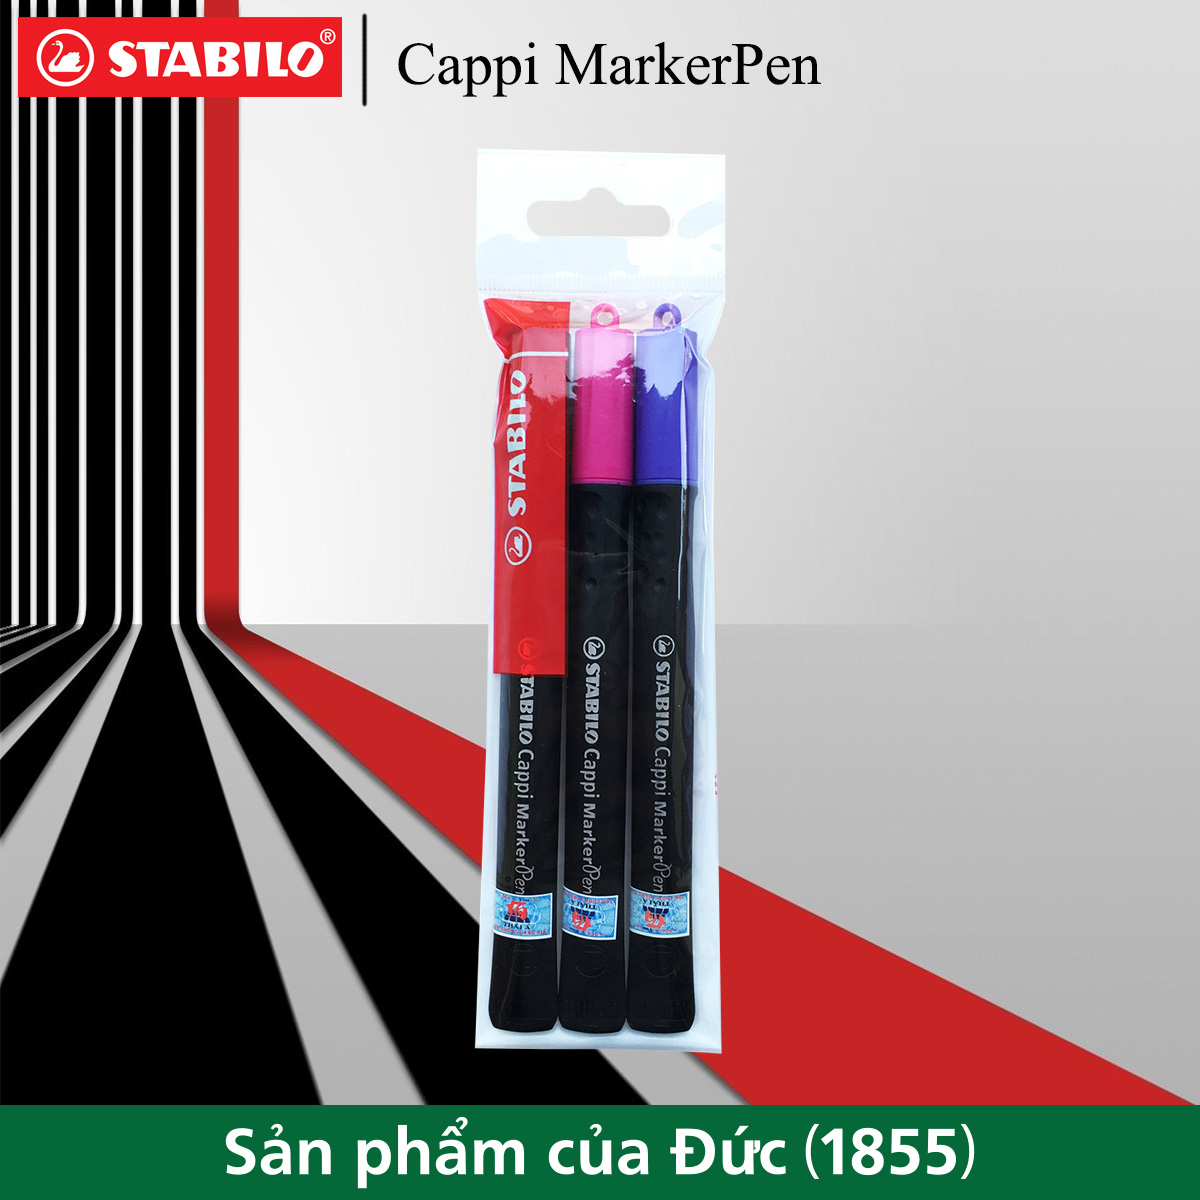 Bộ 3 bút lông dầu STABILO Cappi MarkerPen 169